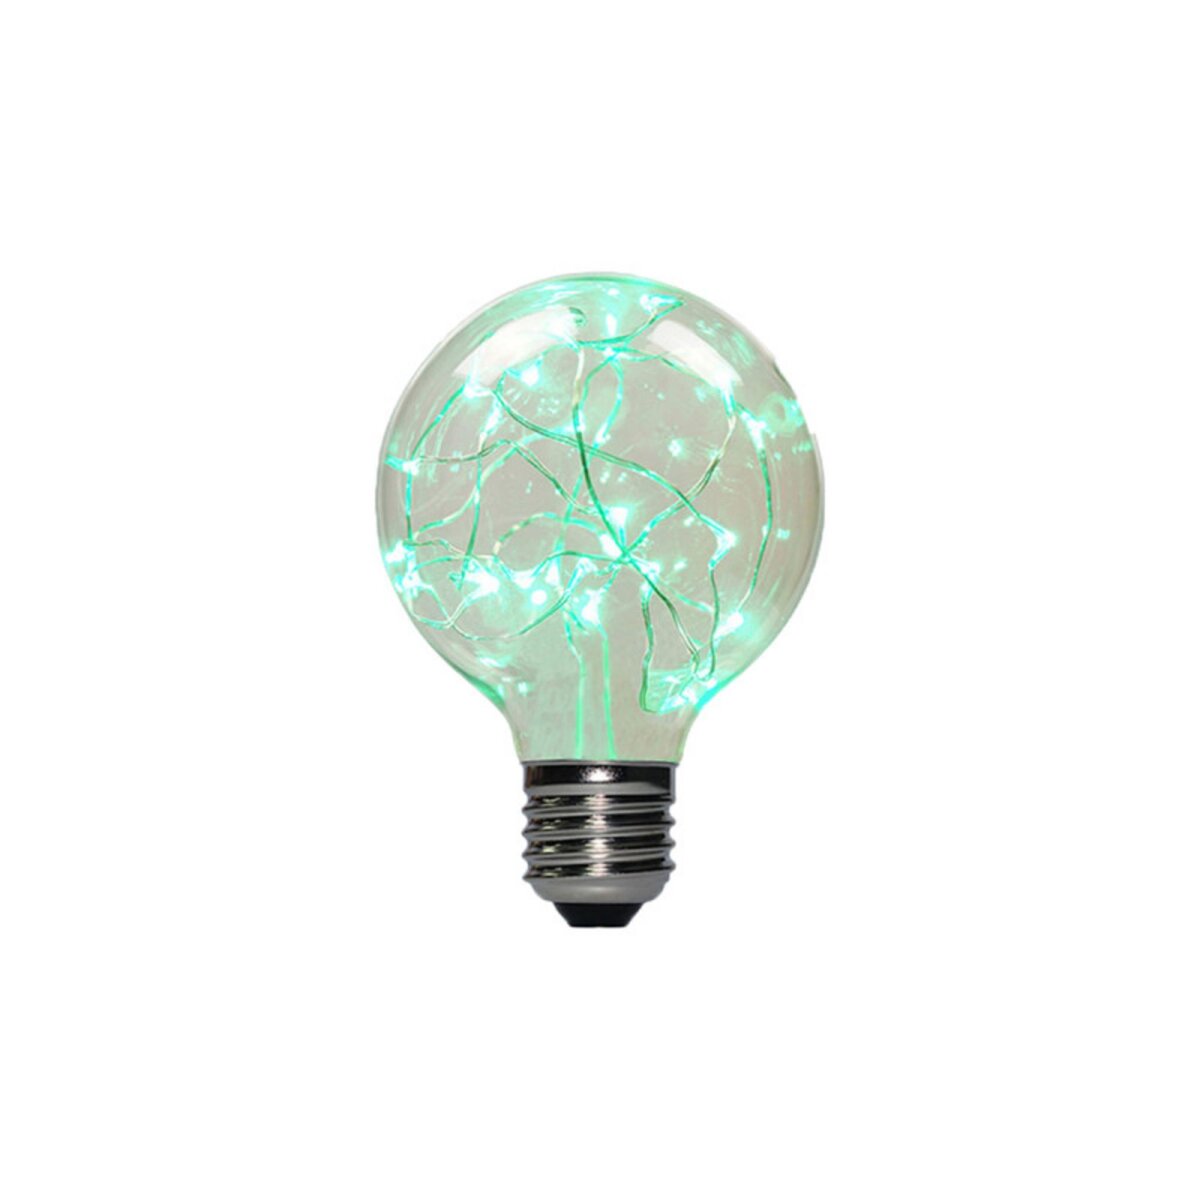  Ampoule LED globe verte à fil de cuivre XXCELL - 2 W - E27